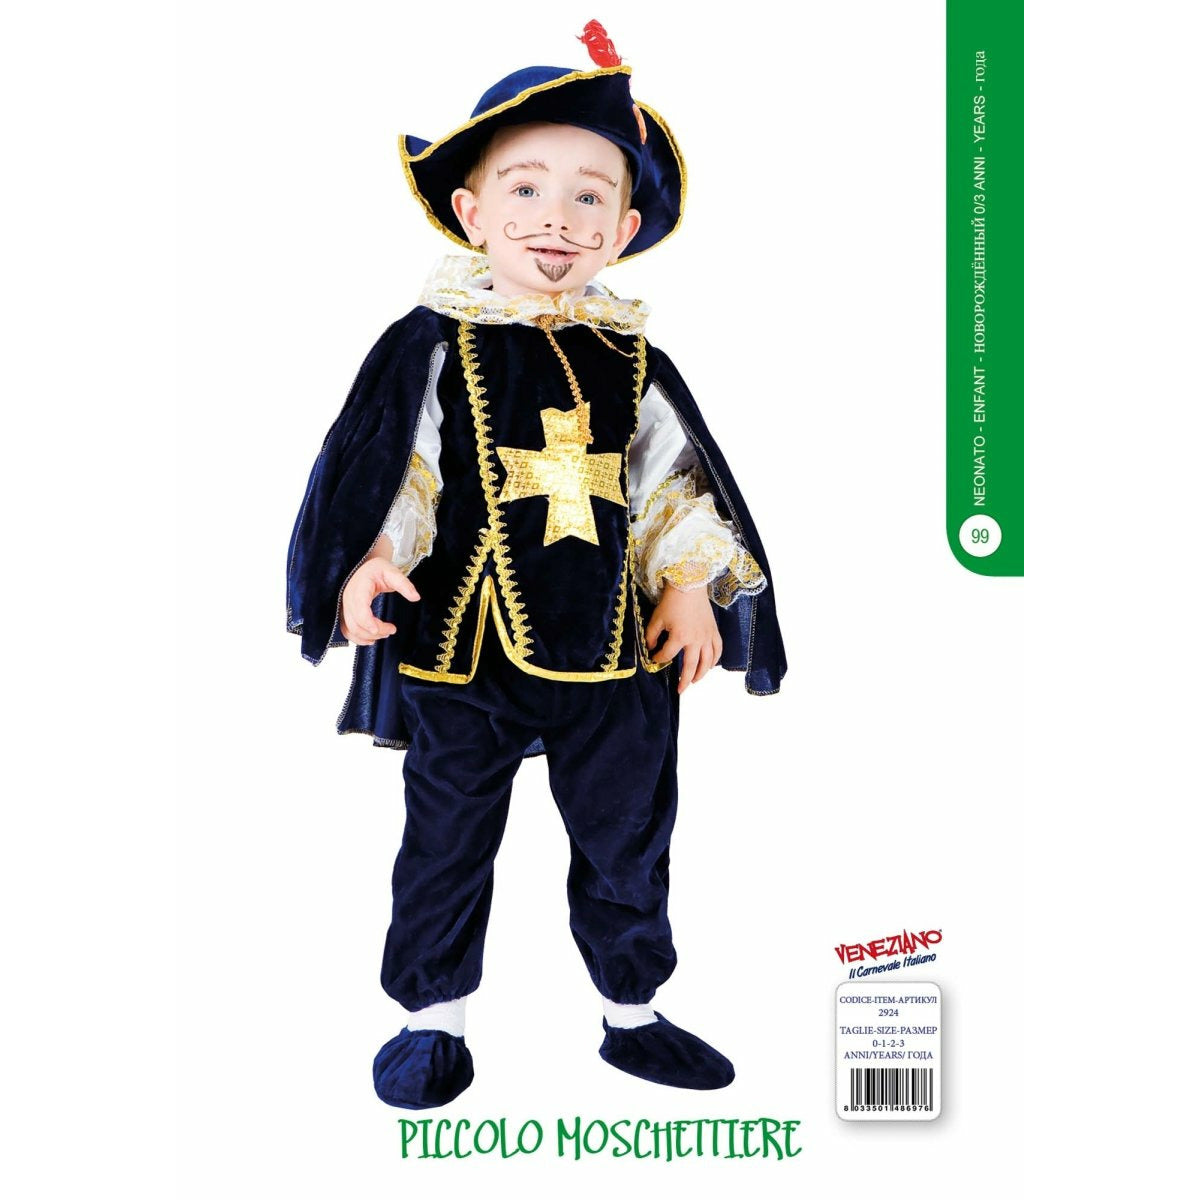 Piccolo Moschettiere - Mstore016 - Carnevale neonato - Veneziano